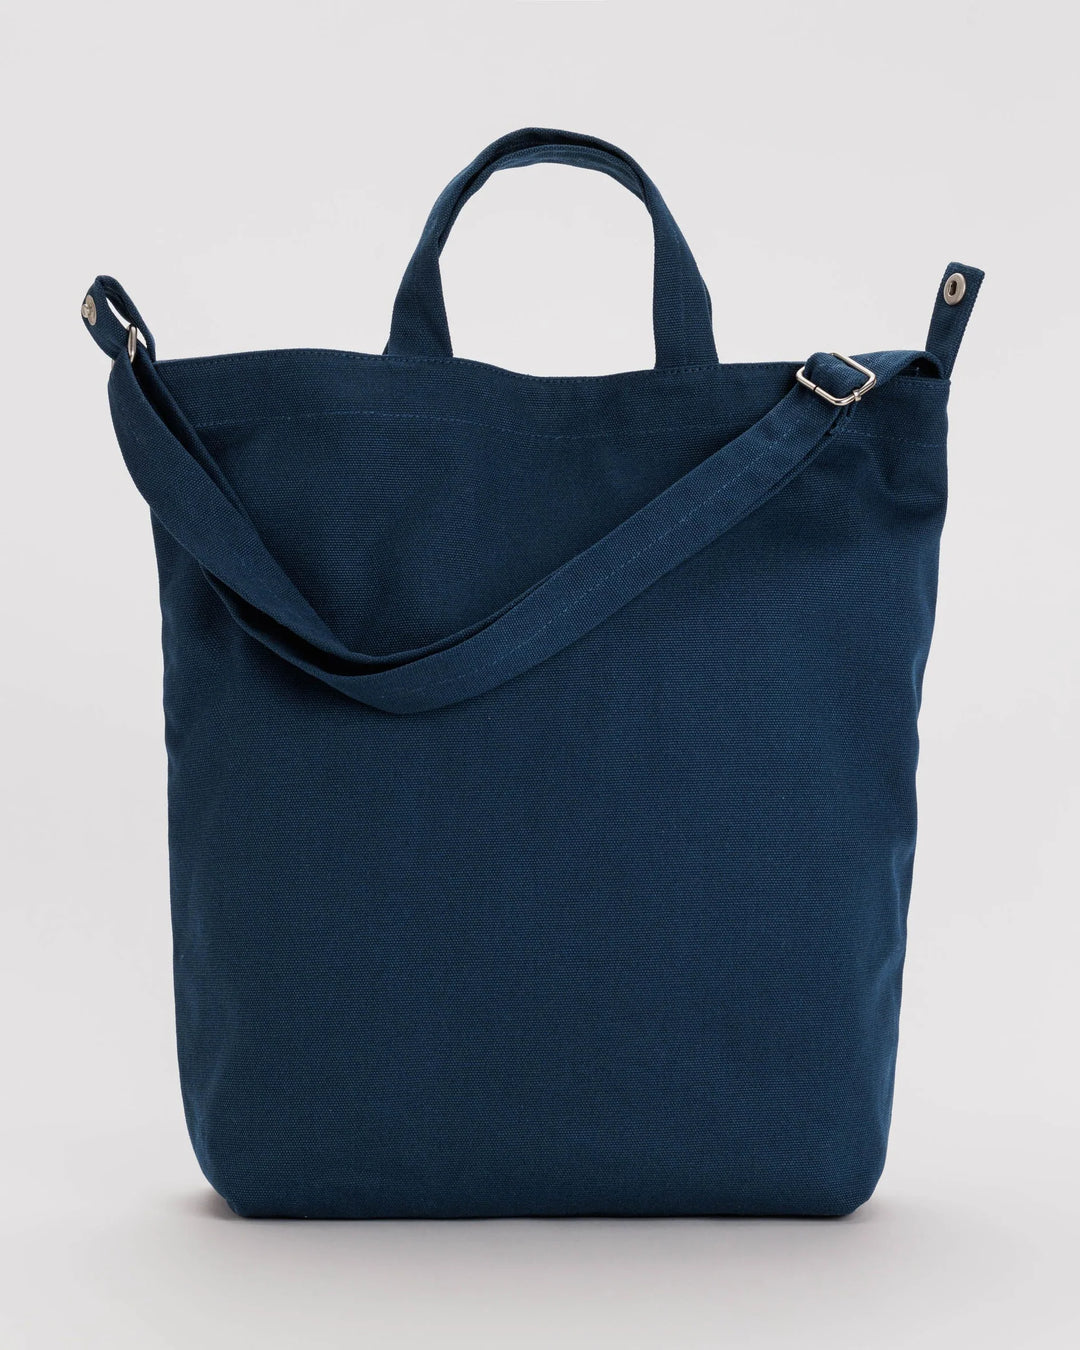 Duck Bag - Navy Blue